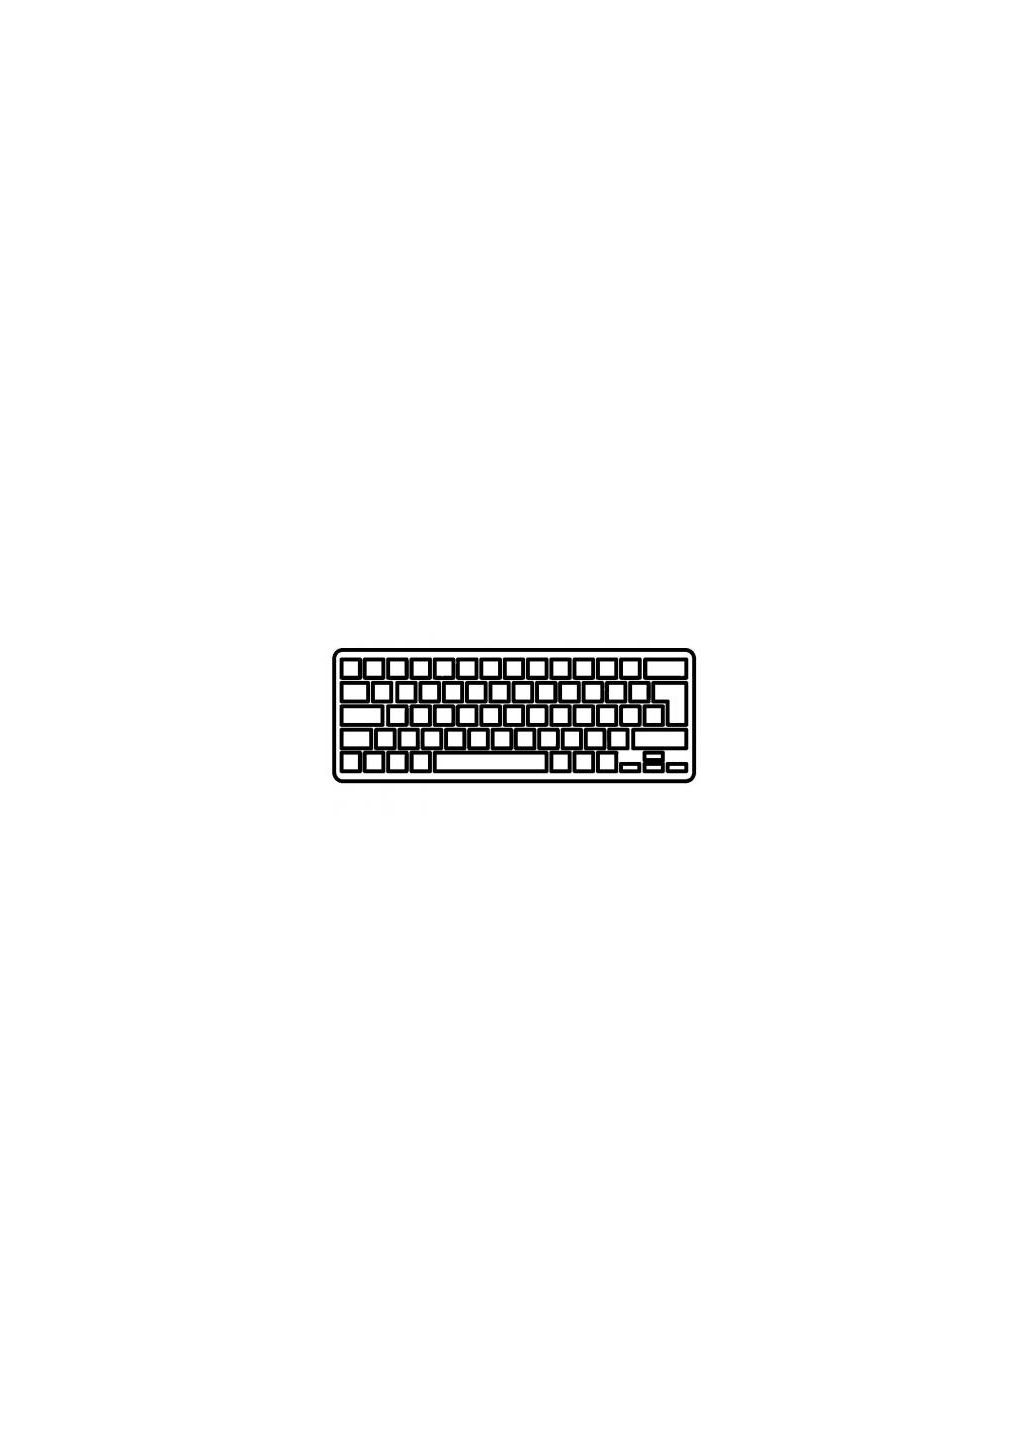 Клавиатура ноутбука (A43670) Asus ux31/ux31a/ux32/ux32a серебро без рамки ua (276707877)